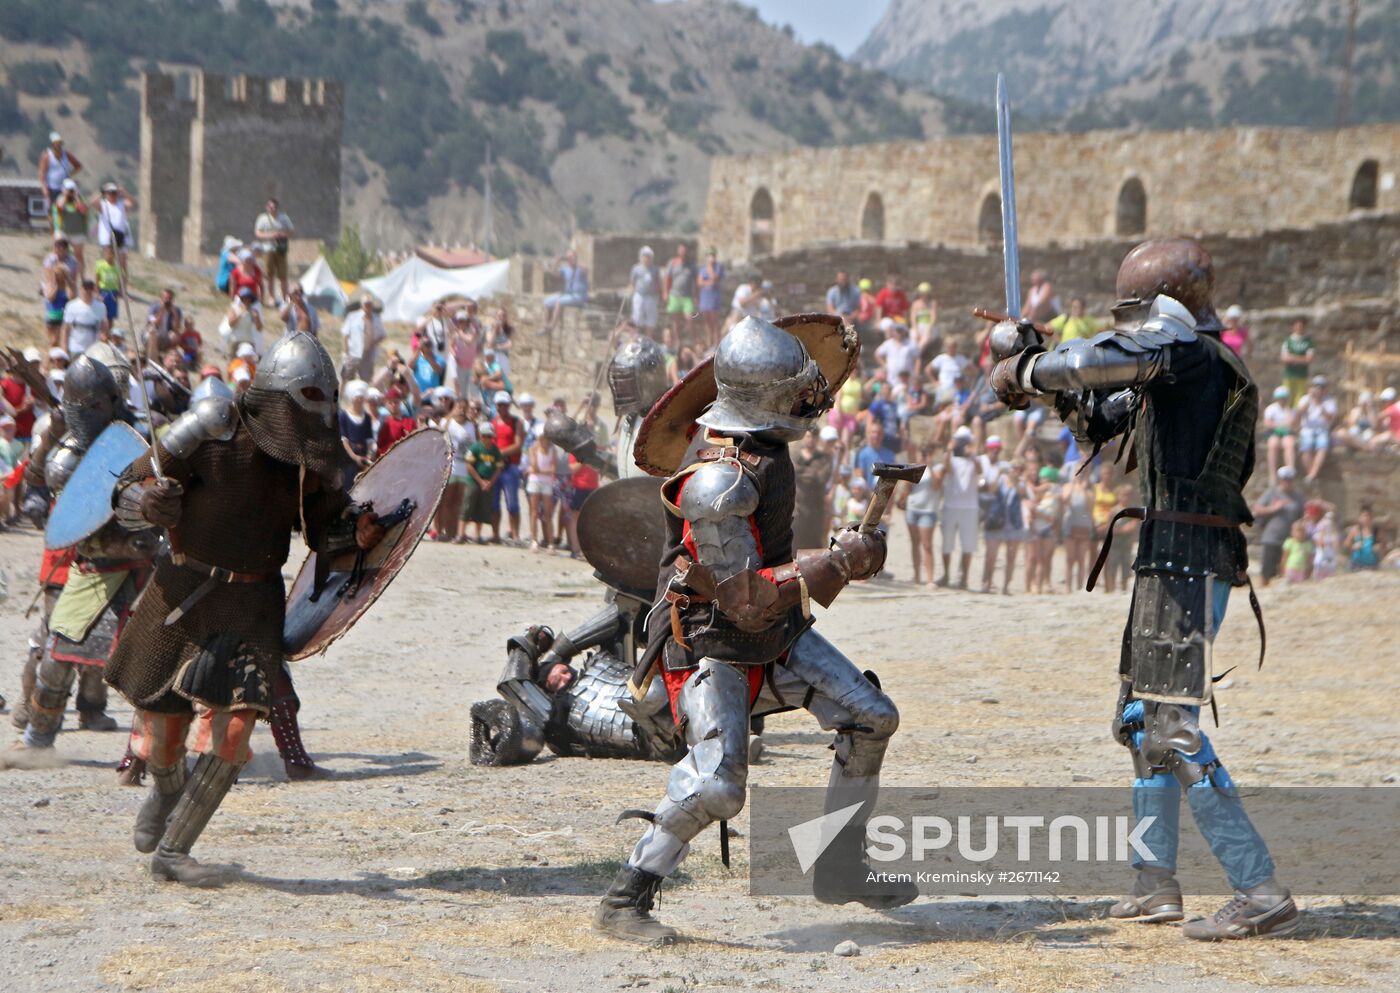 The "Genoa Helmet" 15th International Knight Festival